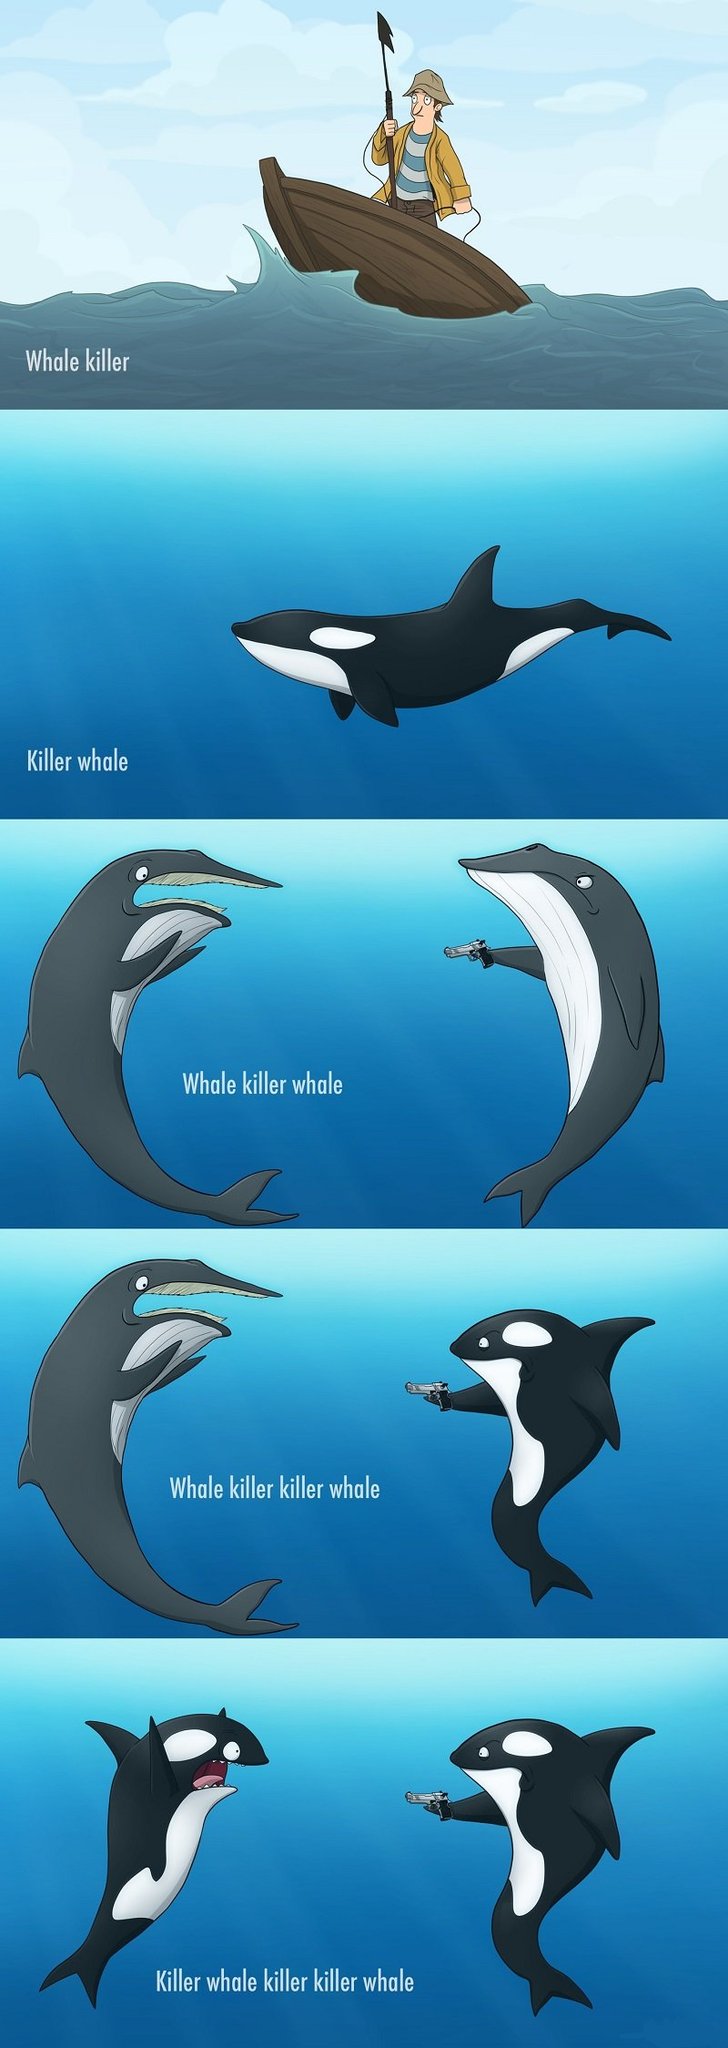 Killer Whale Orca Killer - meme